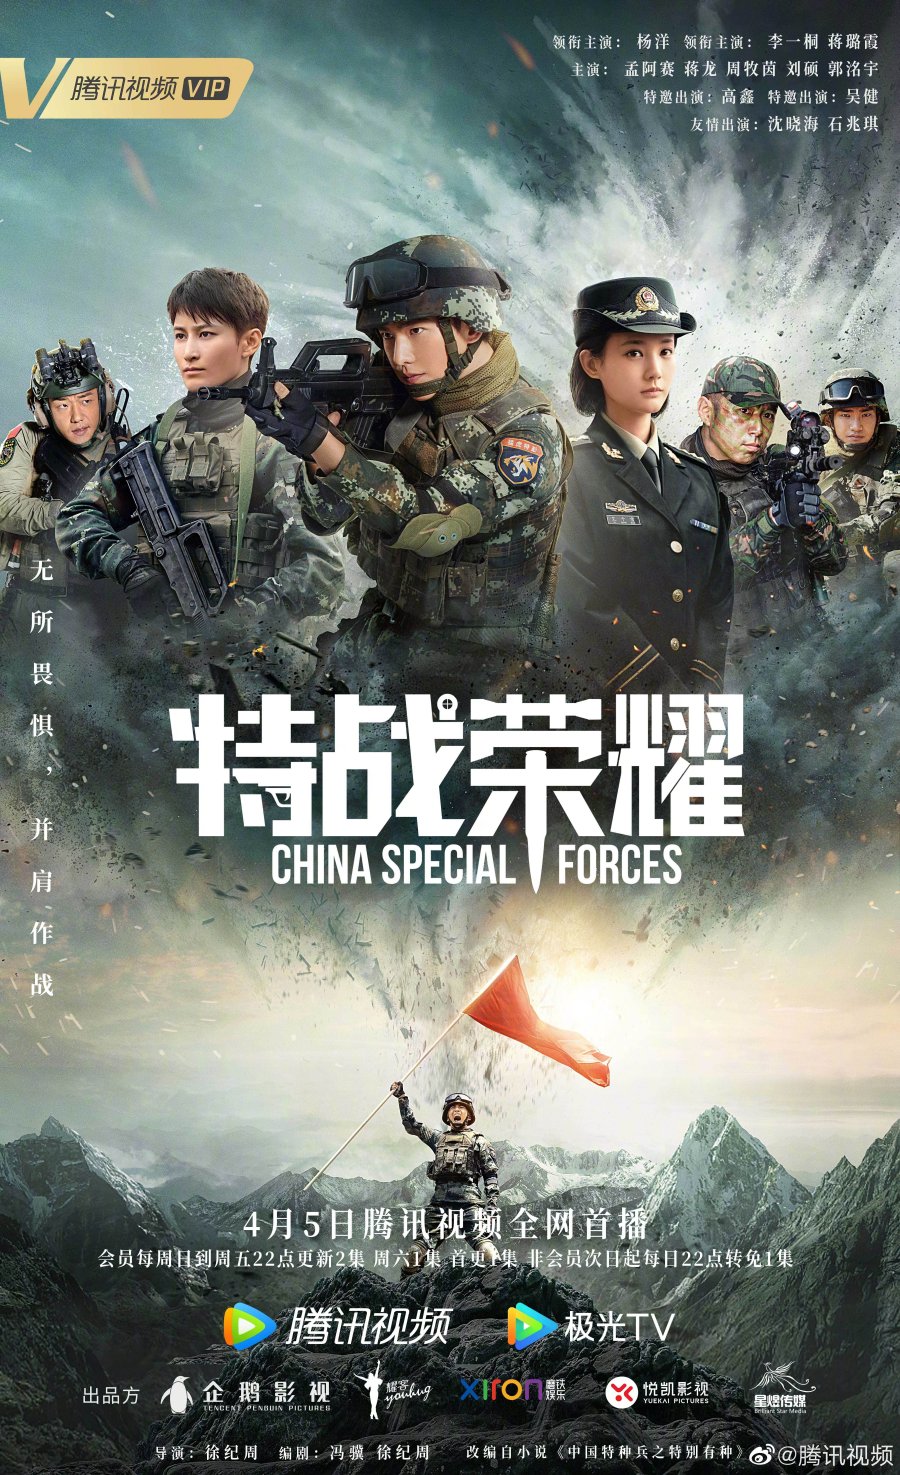 ดูหนังออนไลน์ฟรี Glory of Special Forces (2022) เกียรติยศหน่วยรบพิเศษ ตอน 1-5 (จบ) หนังเต็มเรื่อง หนังมาสเตอร์ ดูหนังHD ดูหนังออนไลน์ ดูหนังใหม่